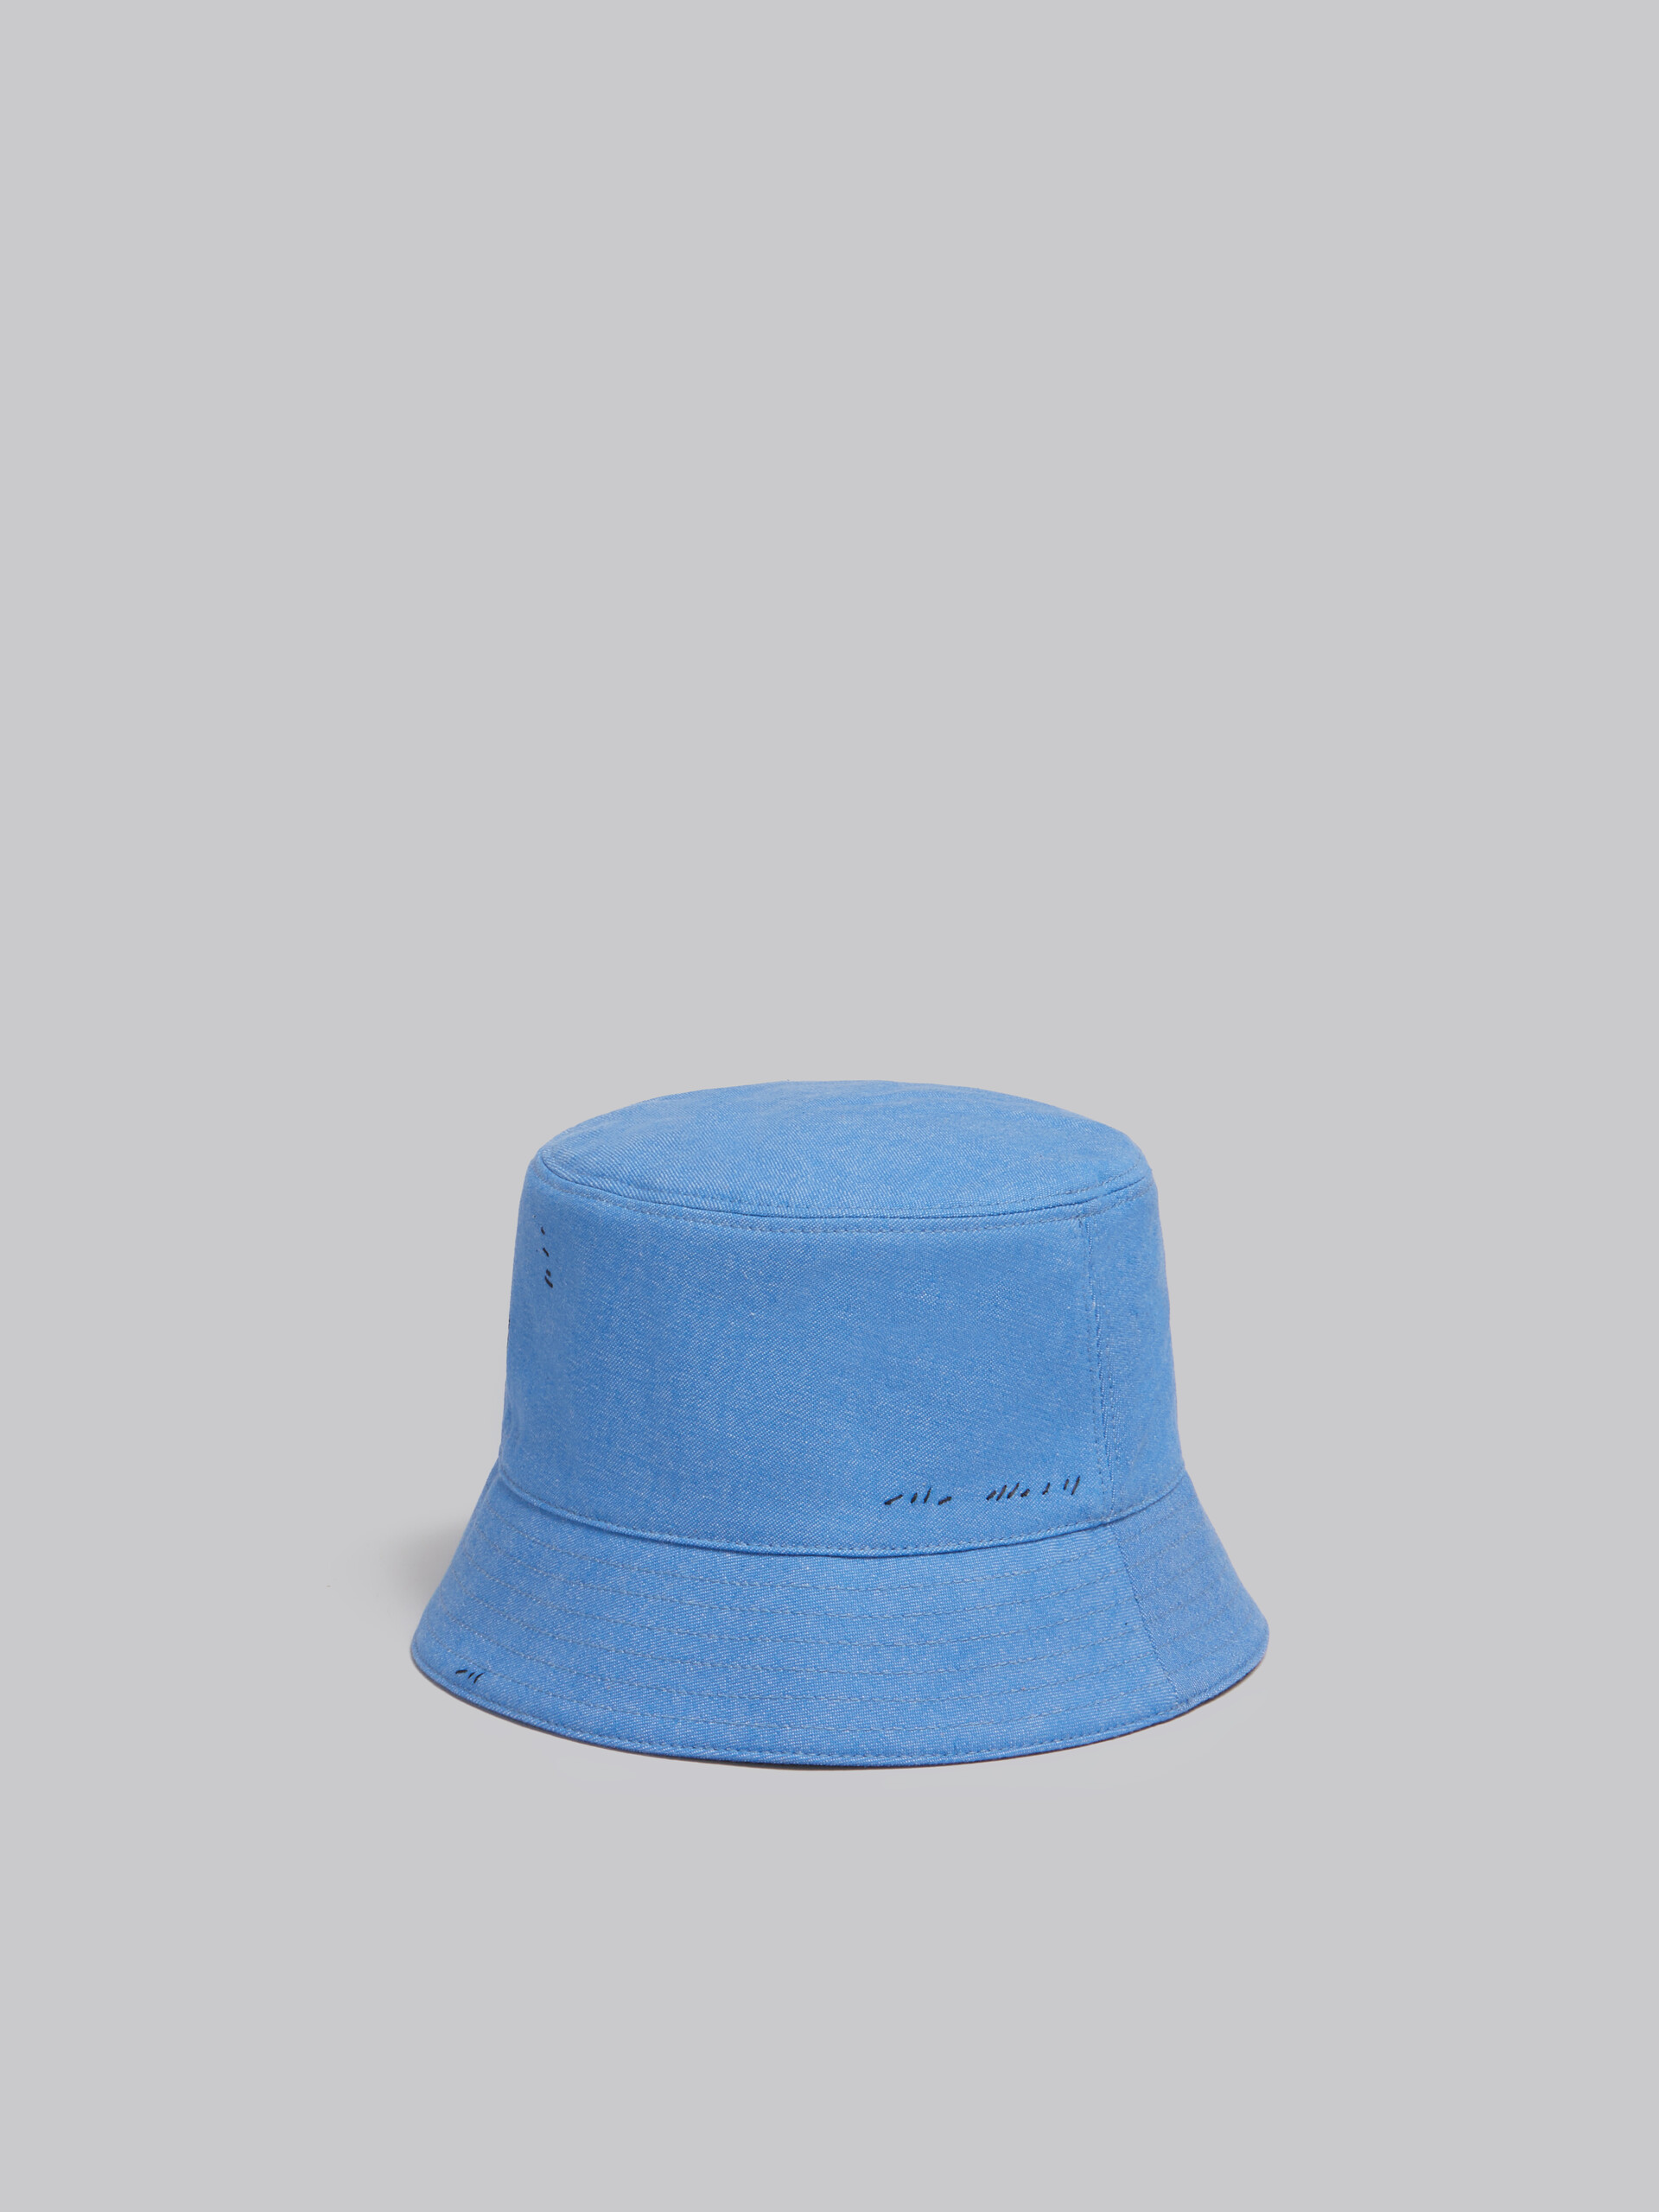 마르니 멘딩 장식 블루 데님 버킷 햇 - 모자 - Image 3